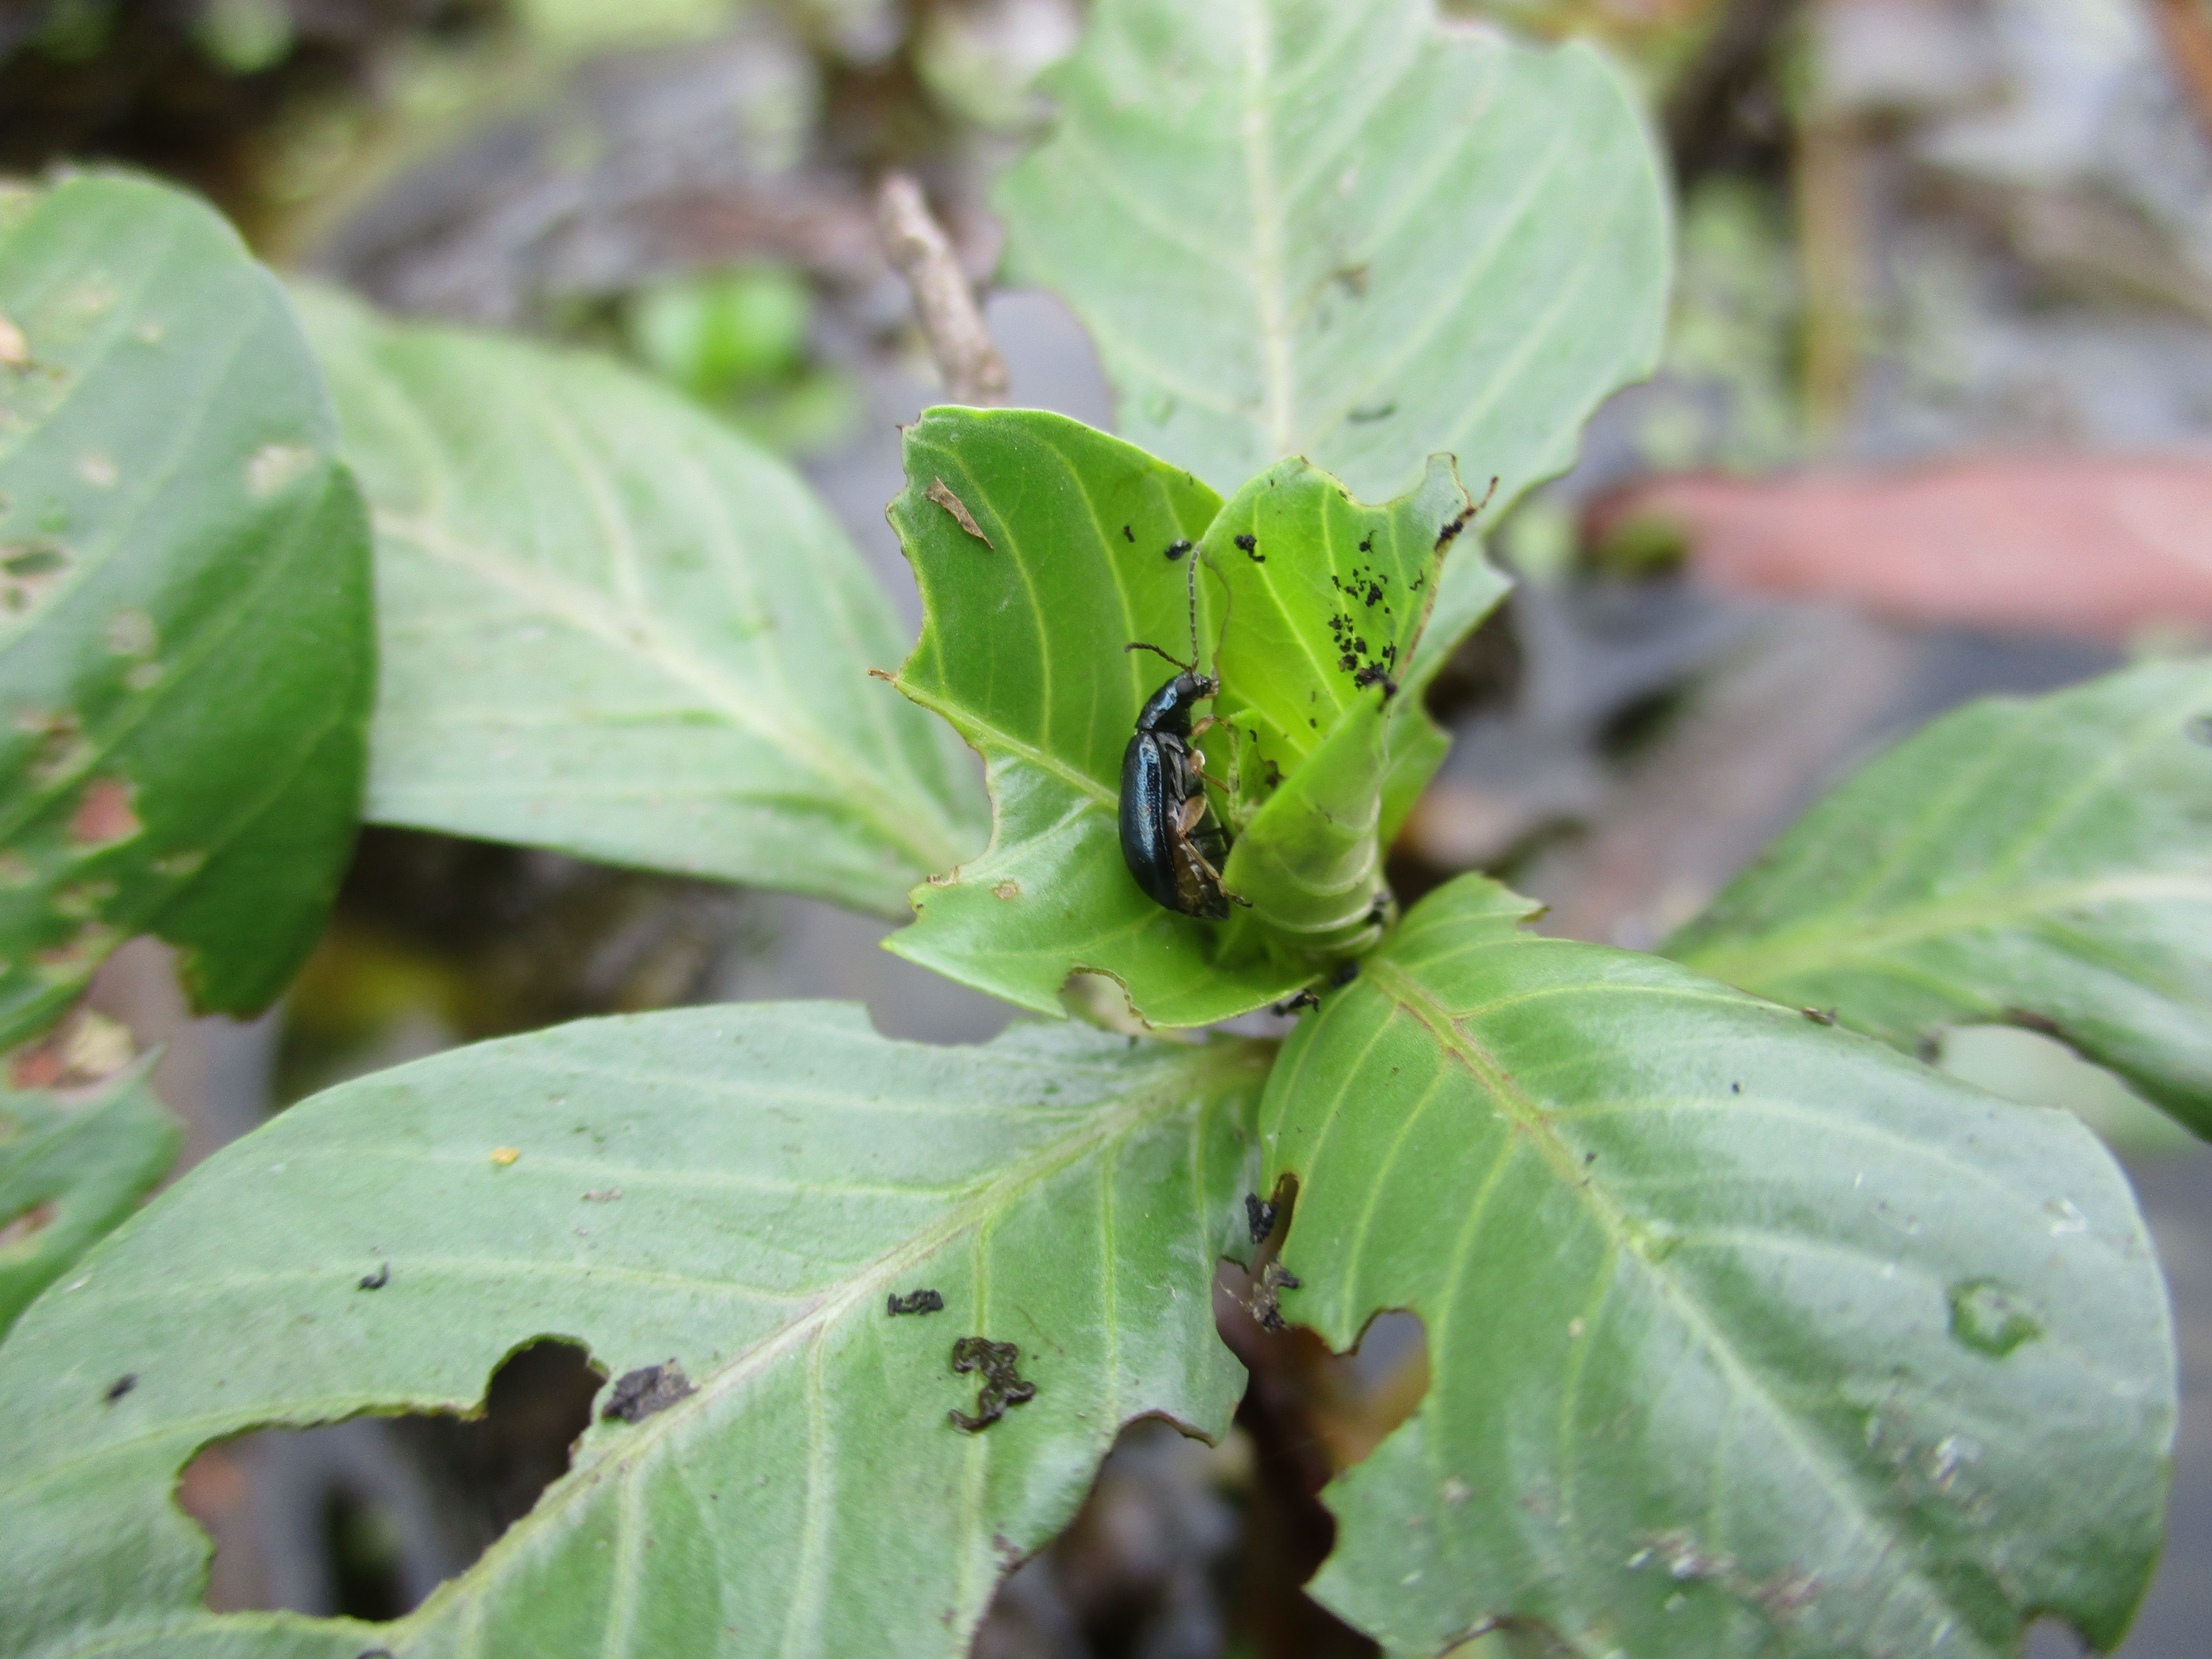 Water primrose flea beetle